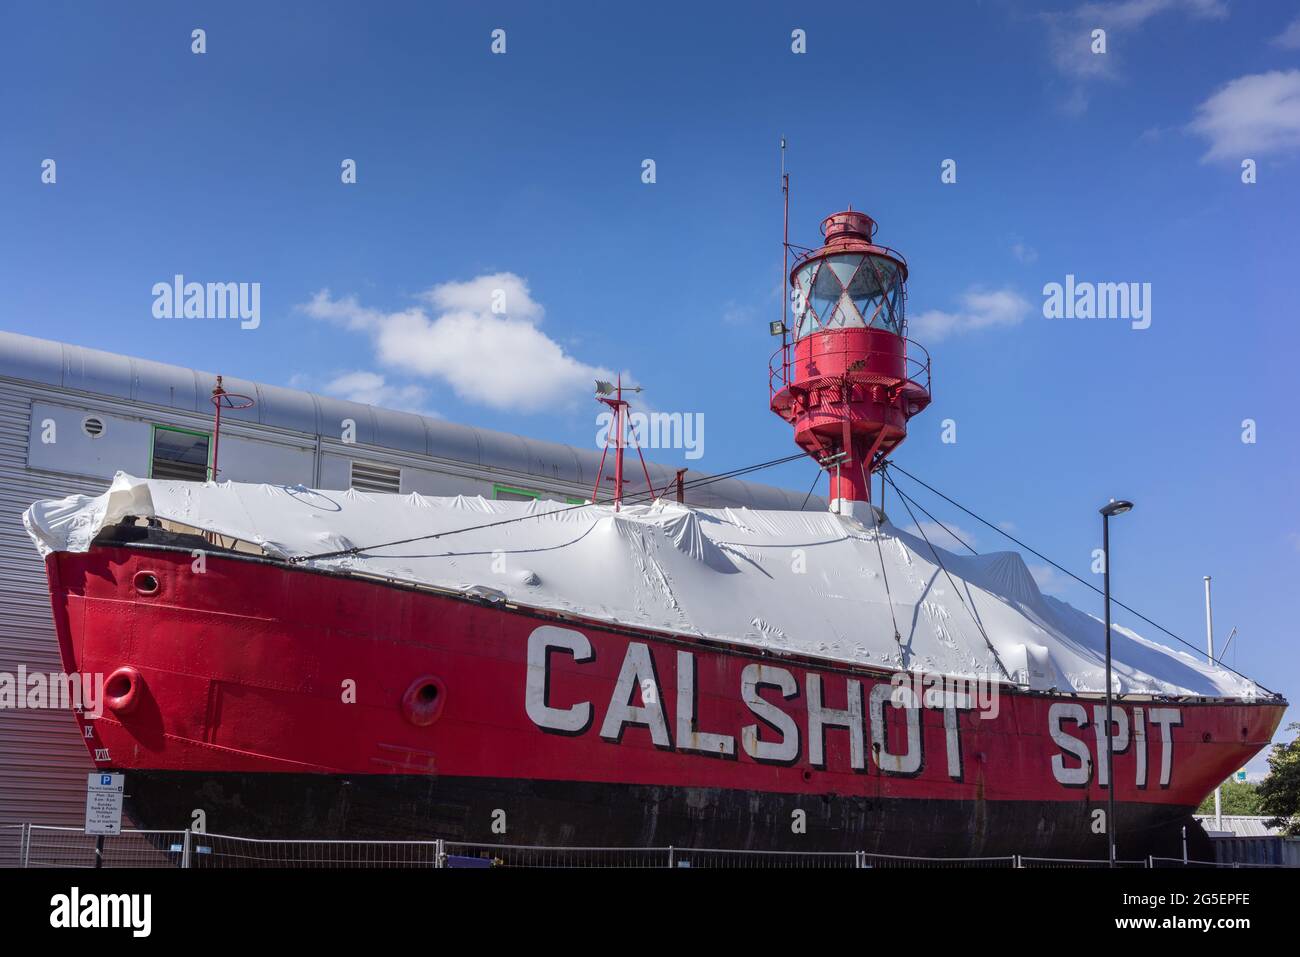 CalShot Spit Light Vessel à l'extérieur du musée Solent Sky, vue depuis Albert Road South, Southampton, Hampshire, Angleterre, Royaume-Uni Banque D'Images